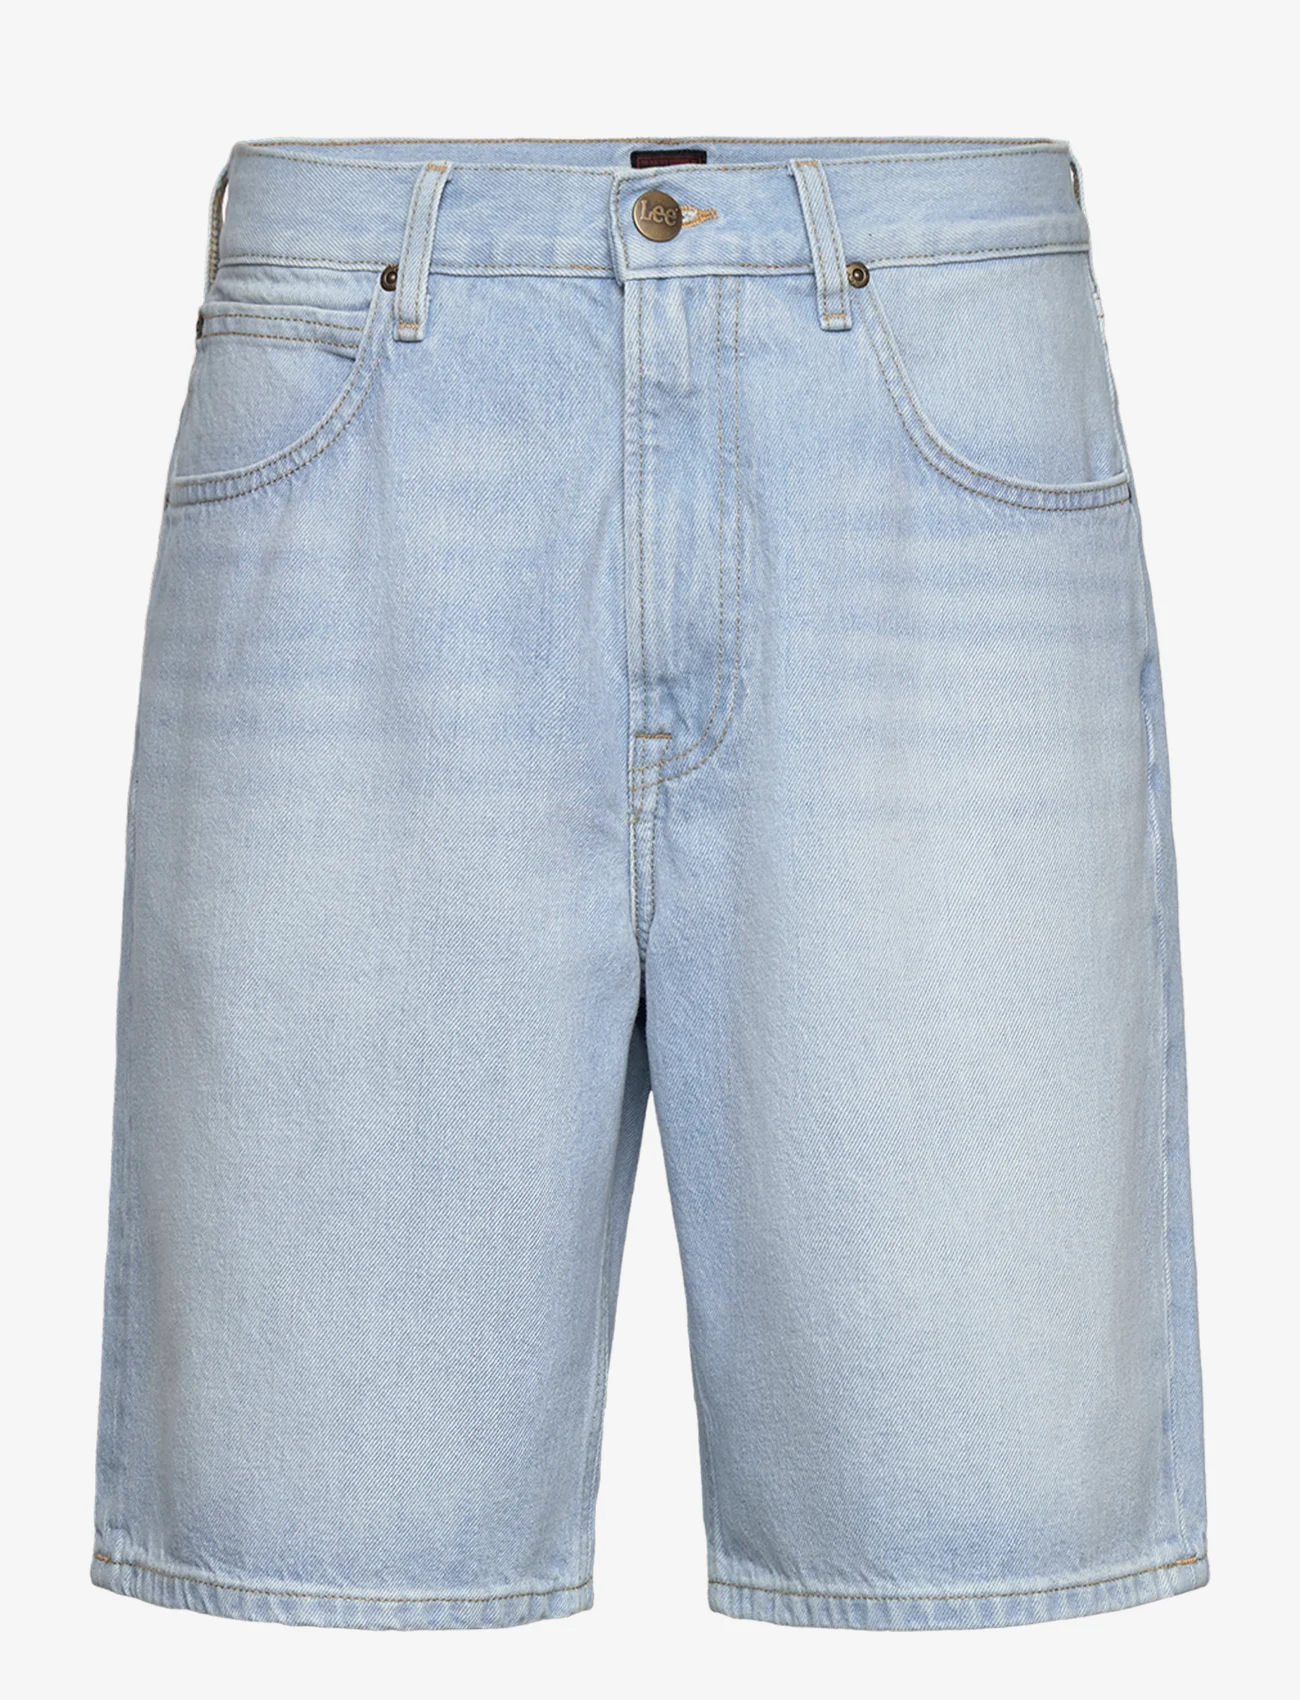 Lee Jeans - ASHER SHORT - džinsiniai šortai - light stone wash - 0